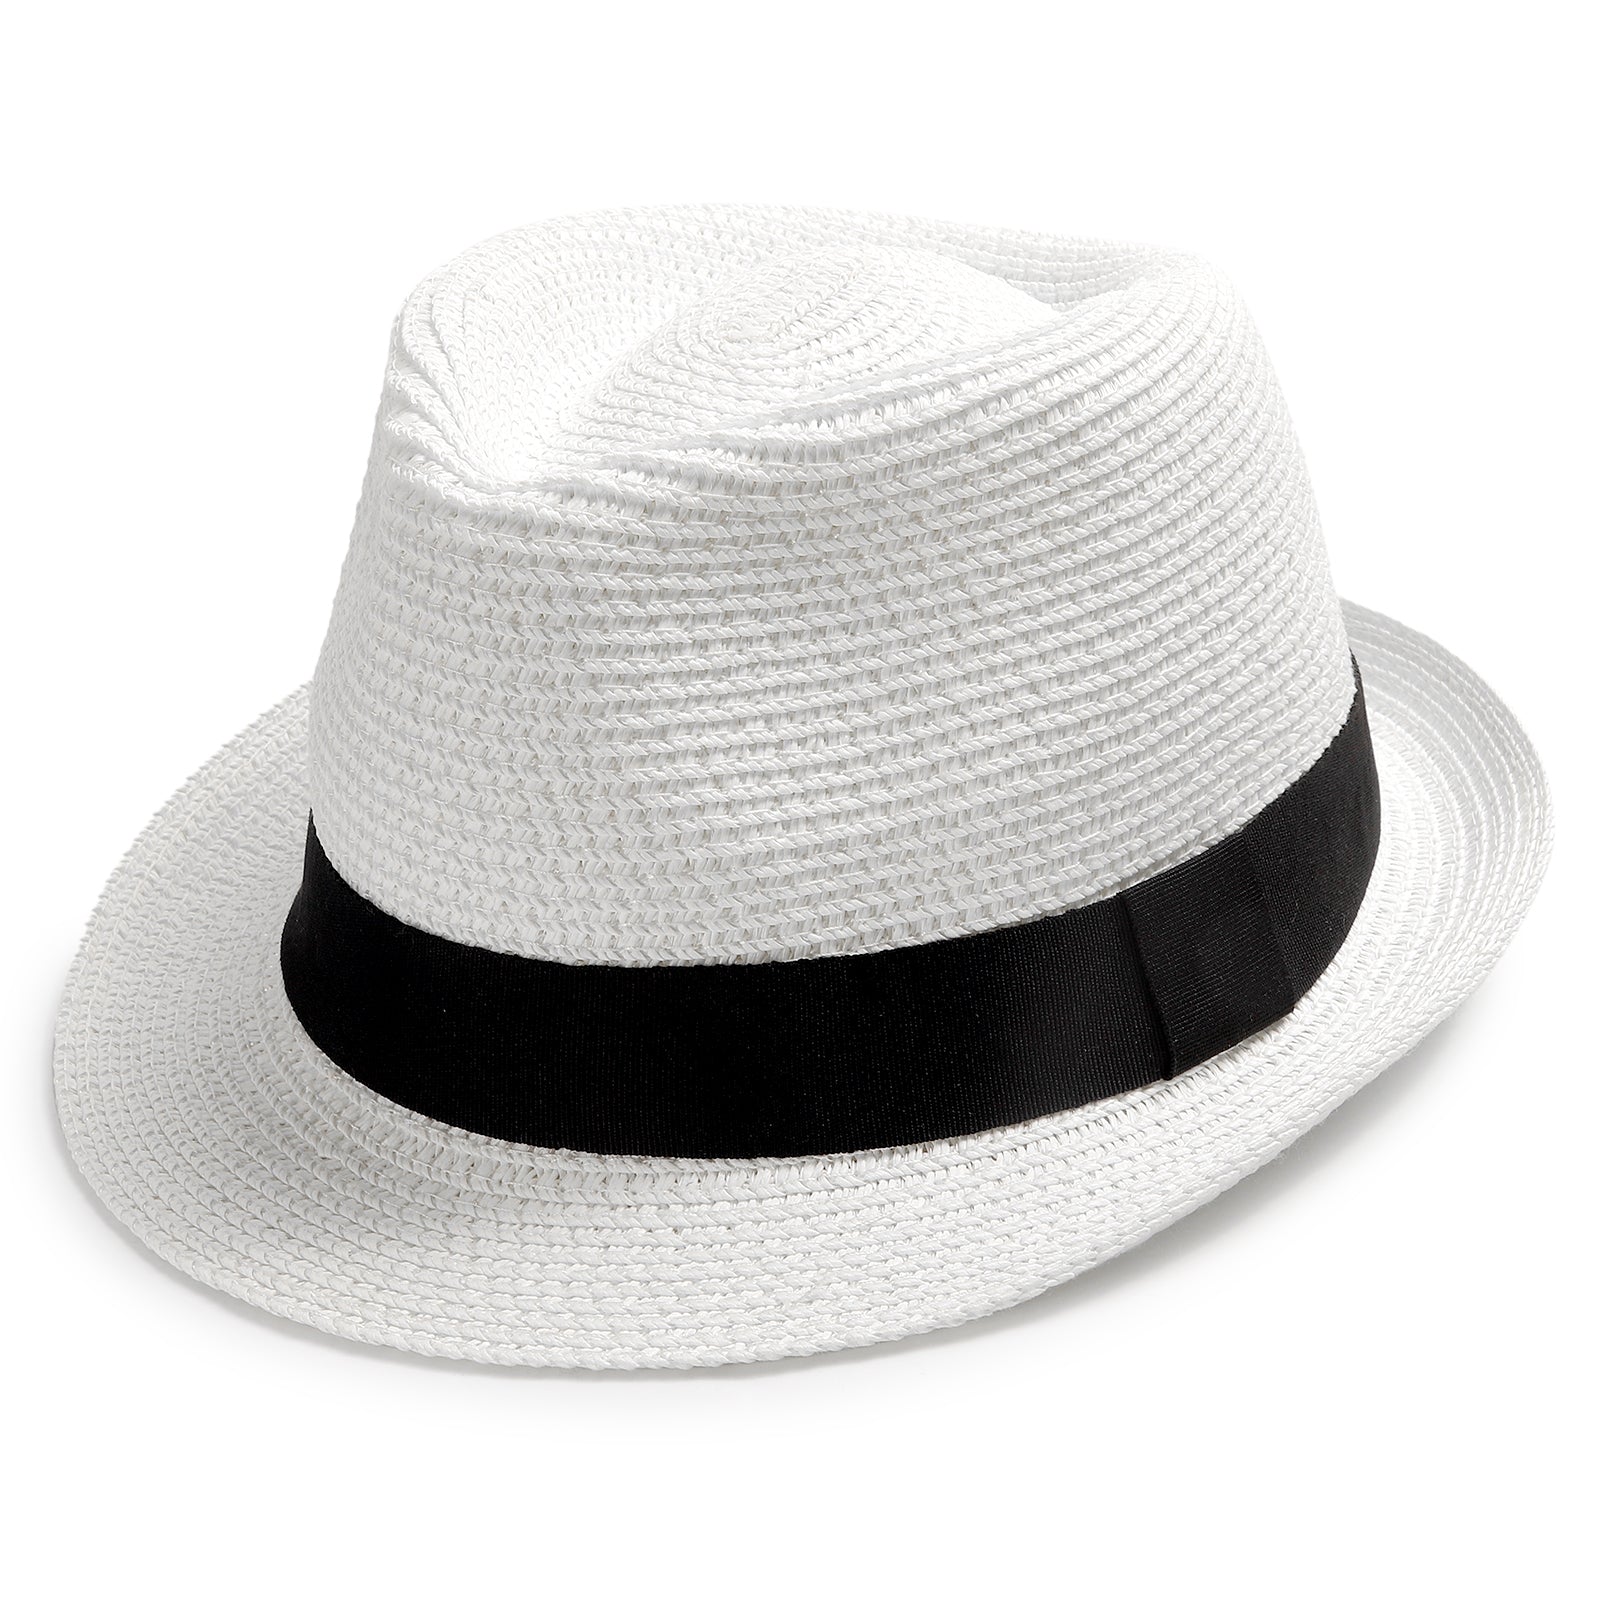 Women's Men's Straw Hat Short Brim Panama Fedora Beach Sun Trilby Hat for  Vacation Gentlemen Roll Up Summer Hat – Lvaizhat